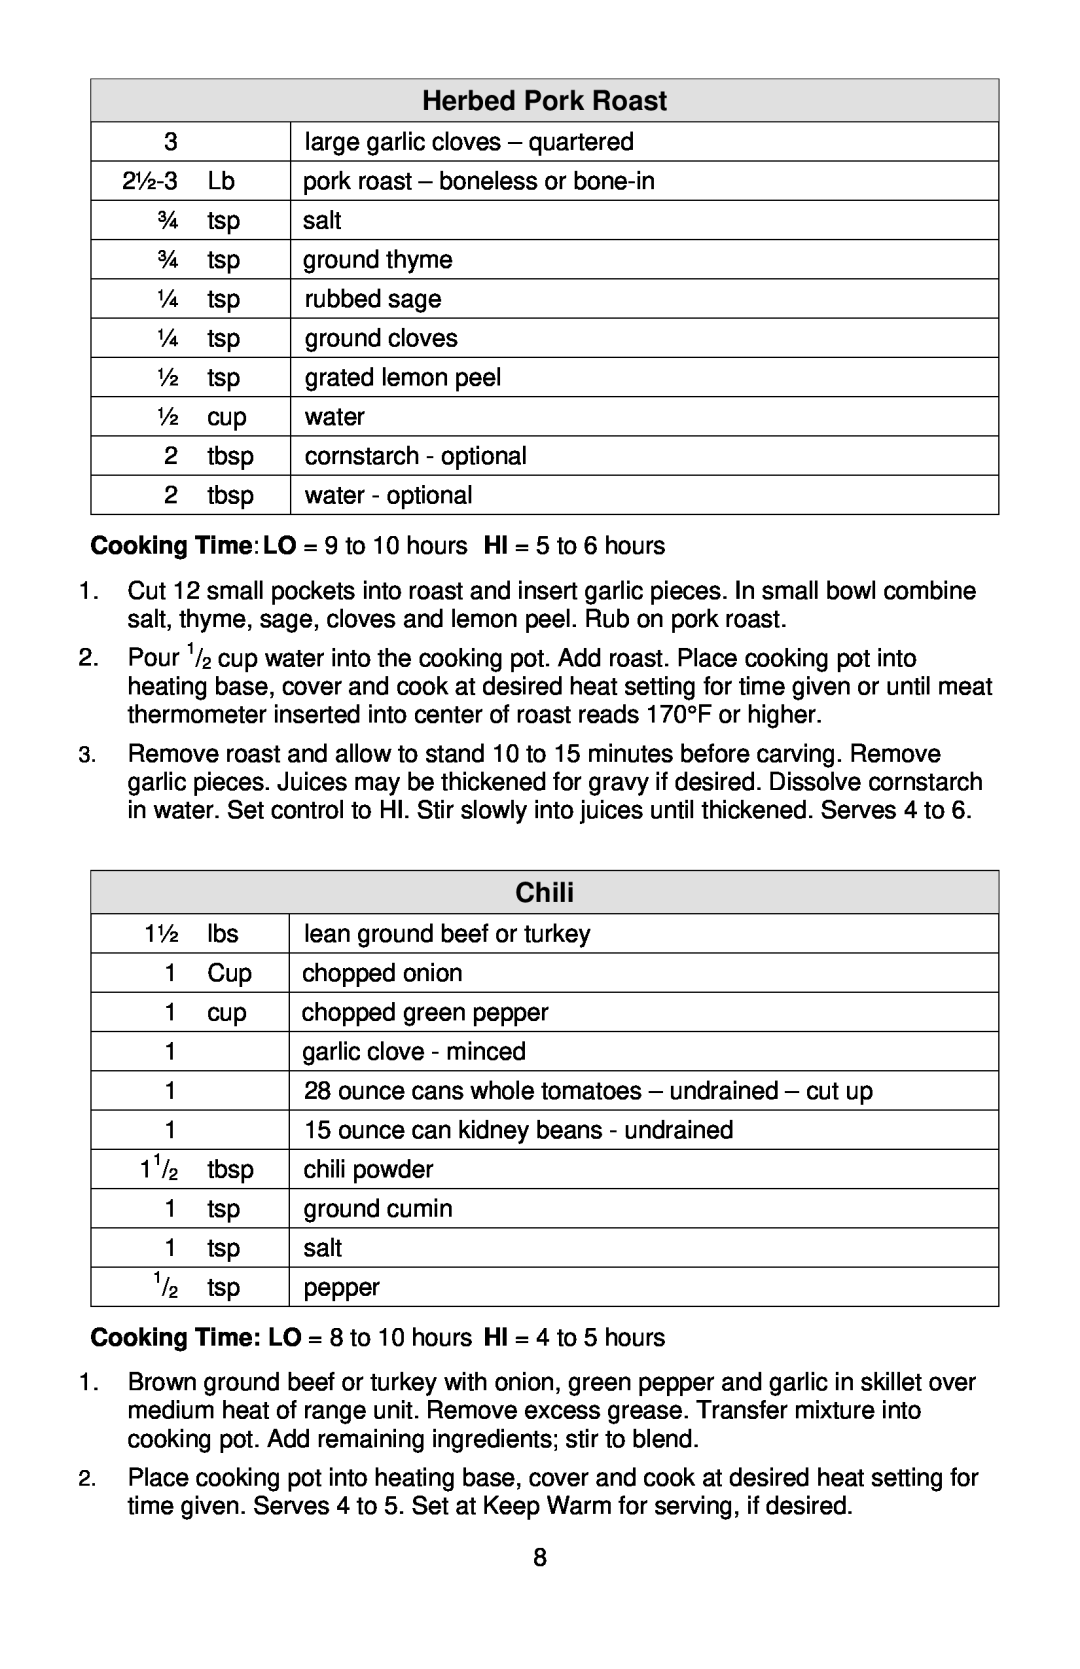 West Bend 3-4 Quart Crockery Cooker instruction manual Herbed Pork Roast, Chili 